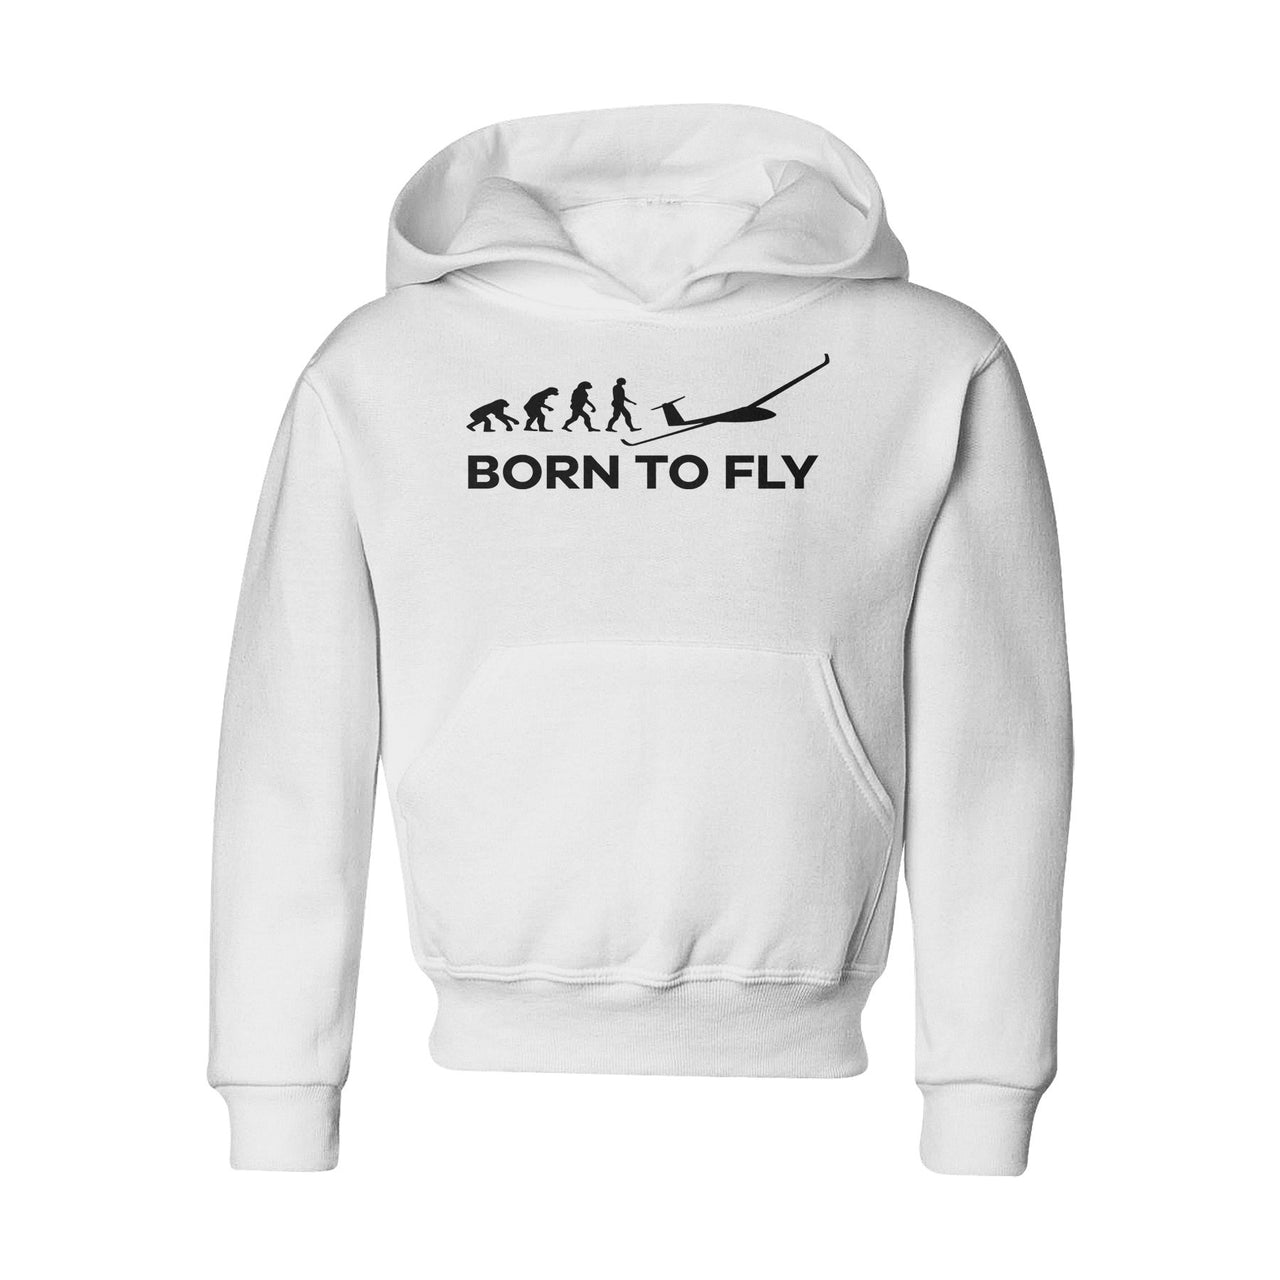 Born To Fly Glider Designed "CHILDREN" Hoodies